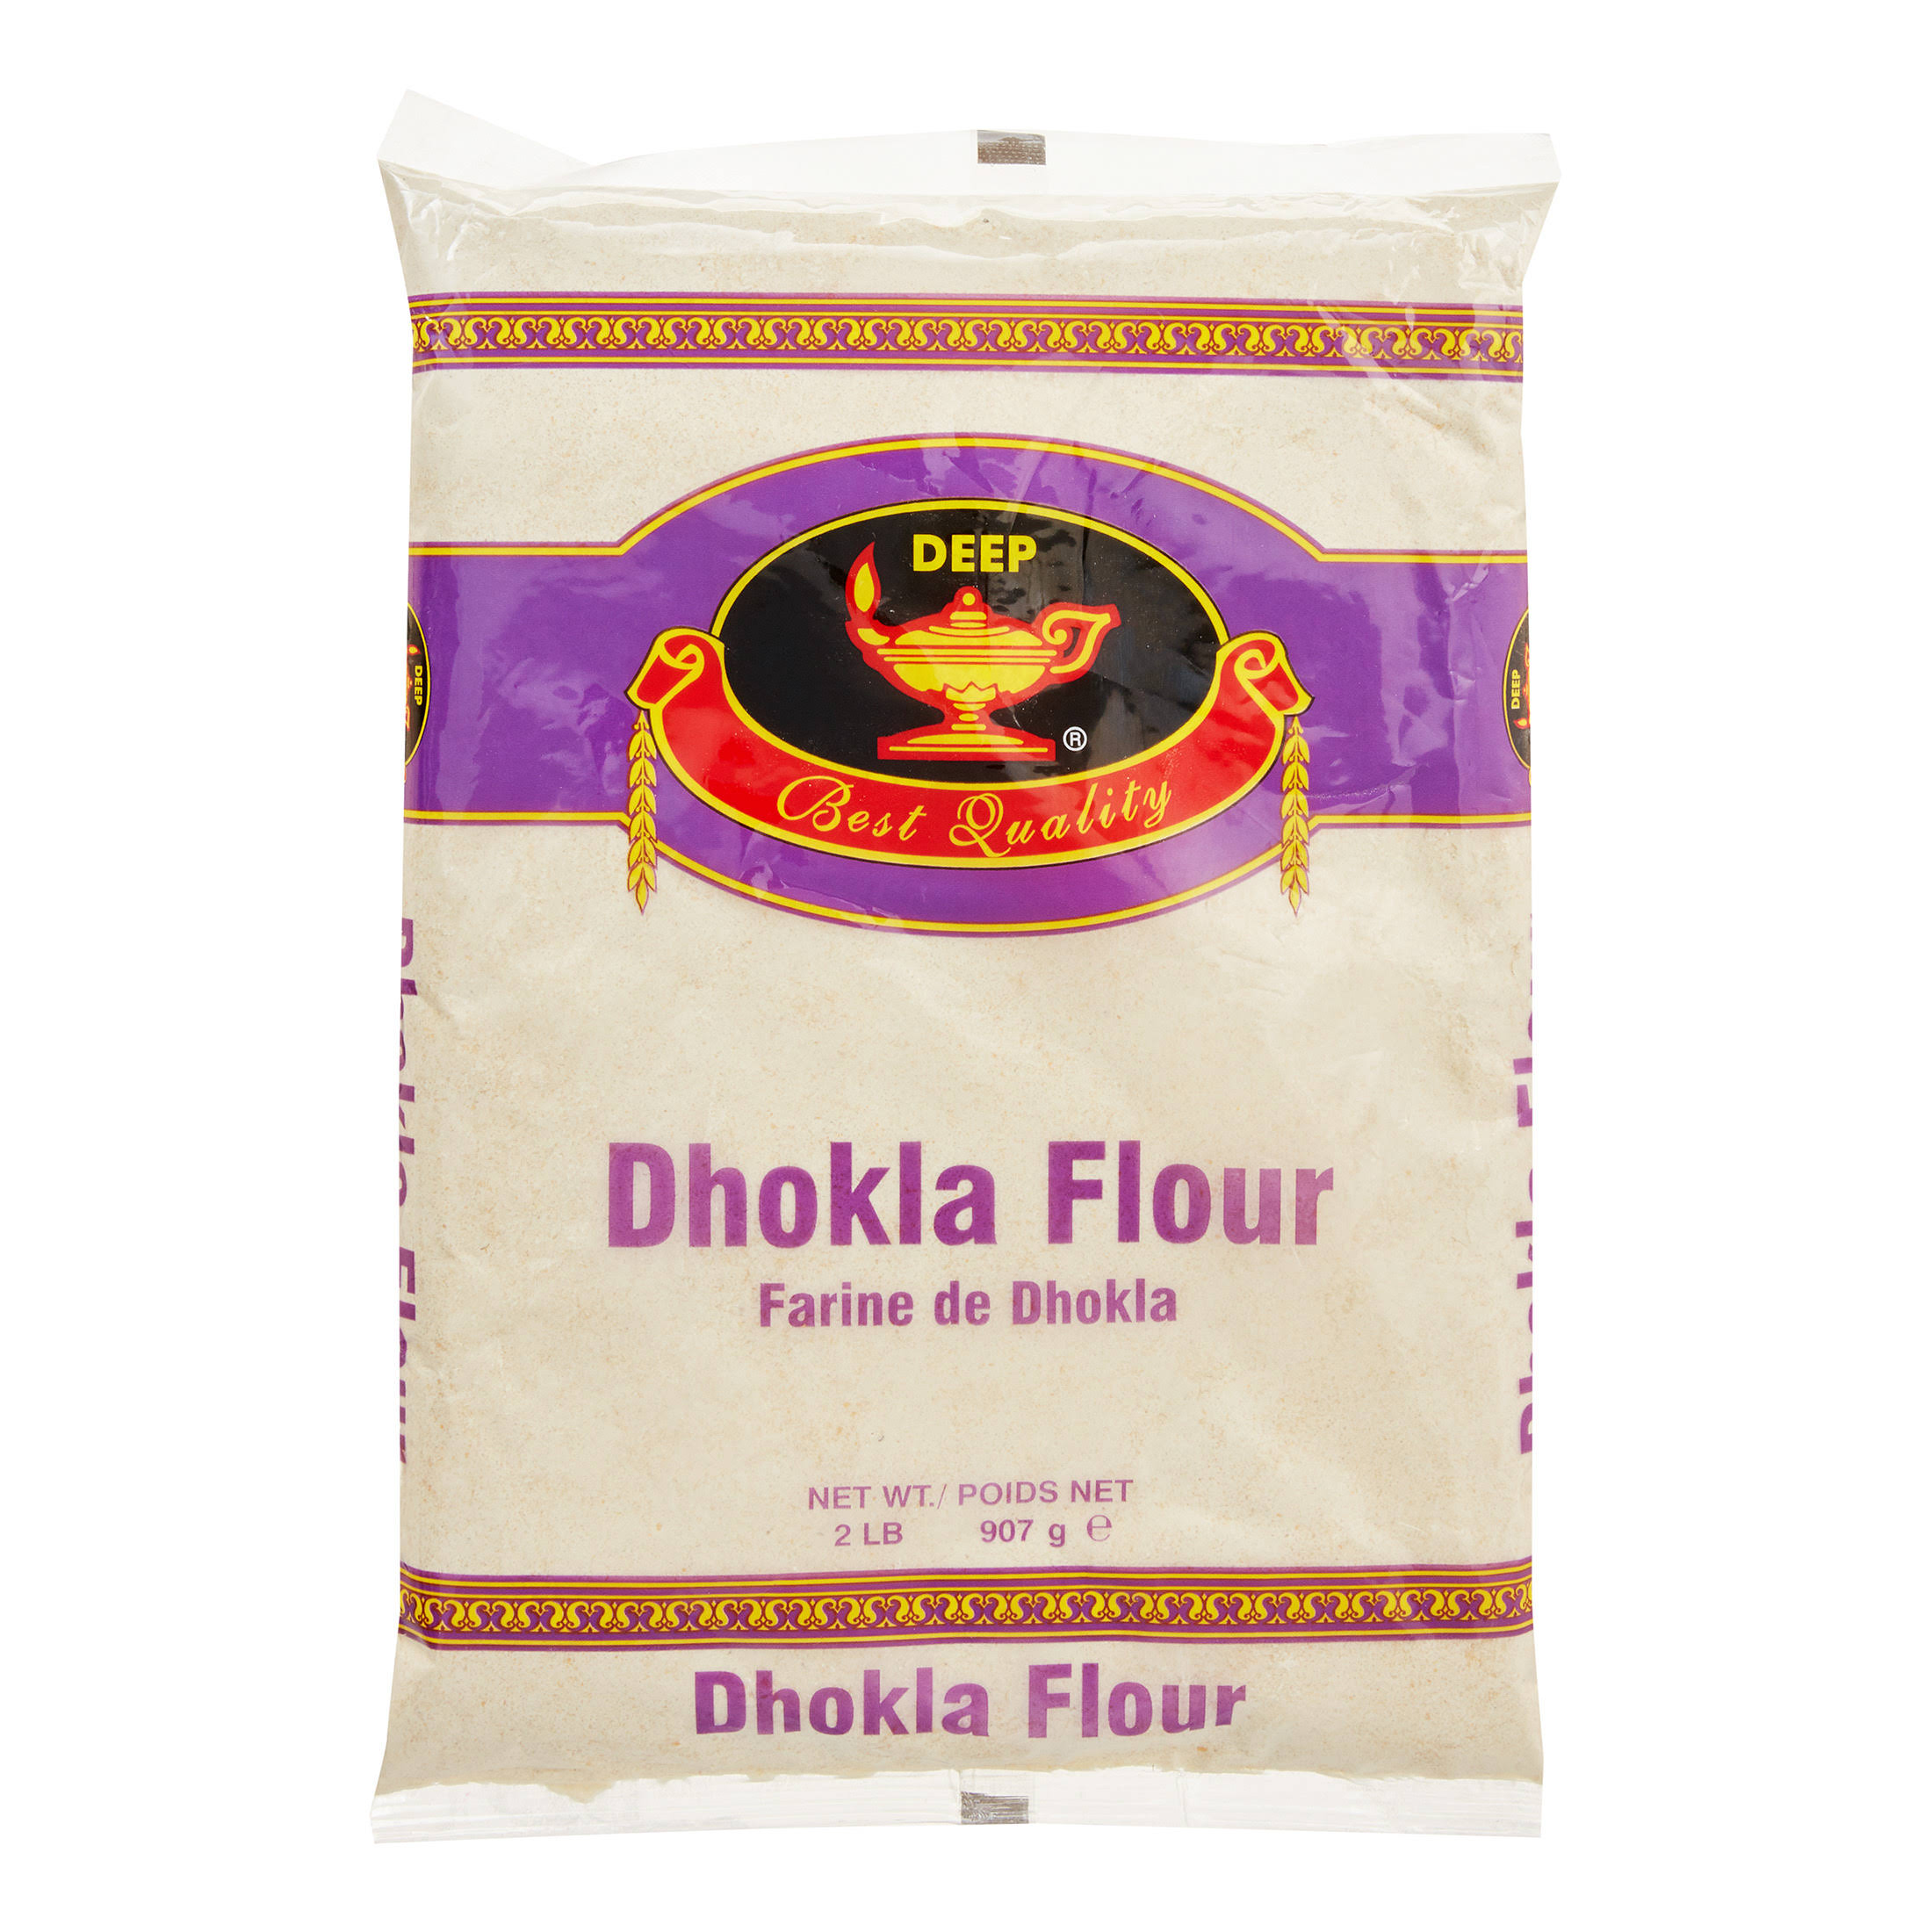 Deep Best Quality Dhokla Flour - 2lbs